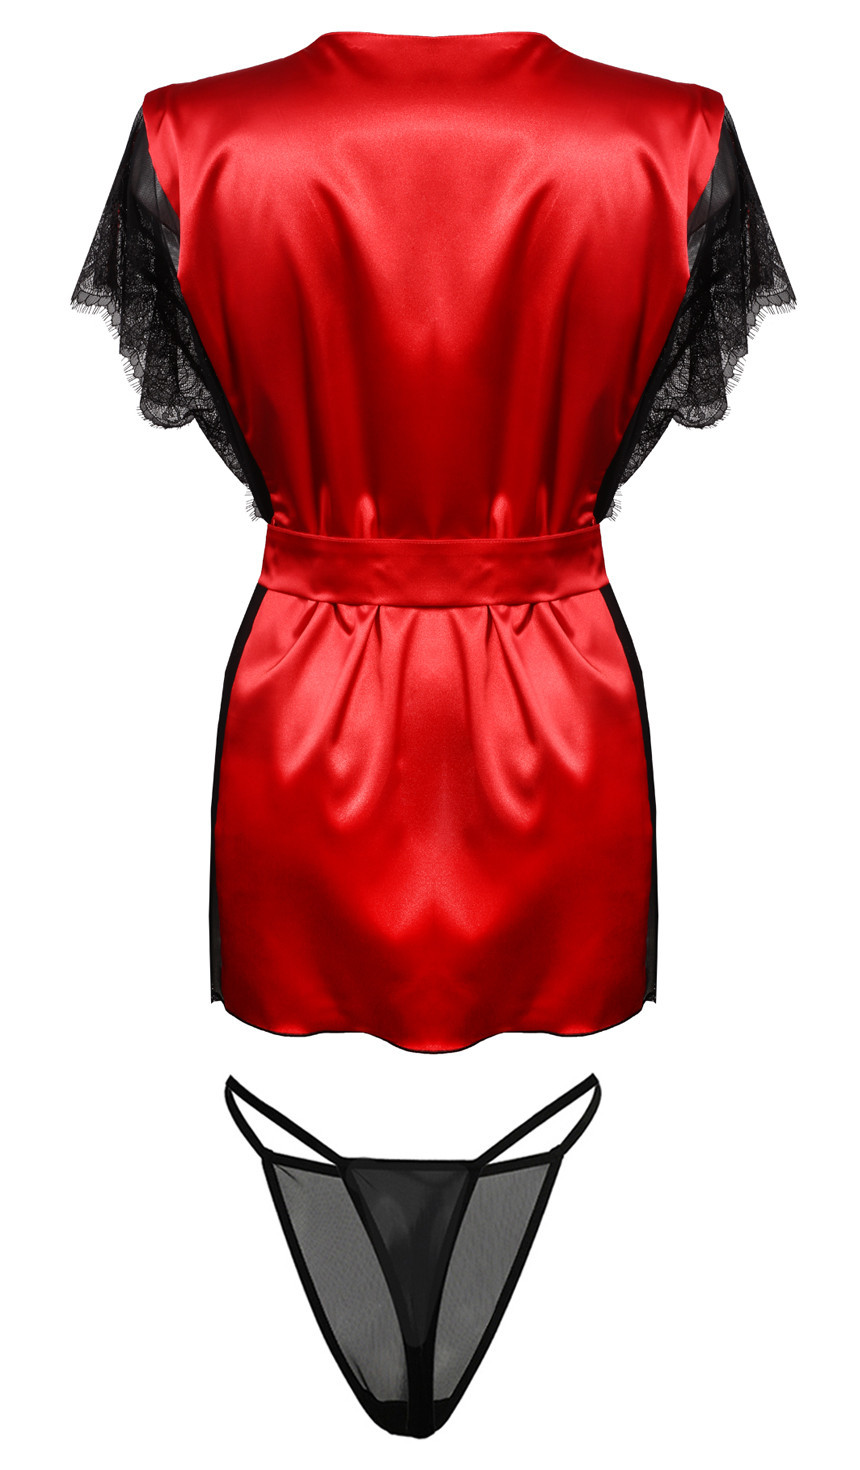 Housecoat model 18240905 Red XL - DKaren